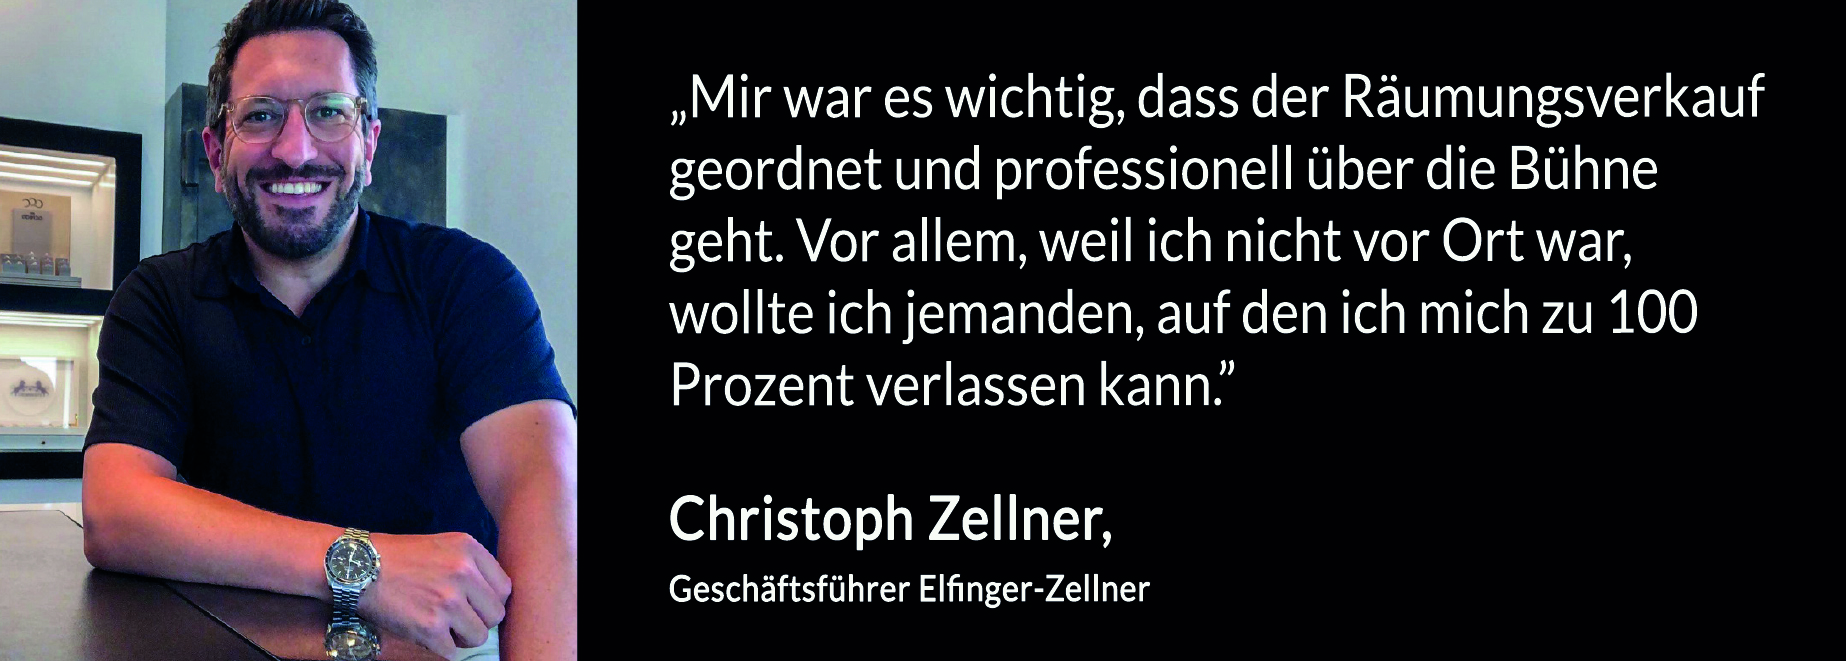 Christoph_Zellner_Elfinger-Zellner